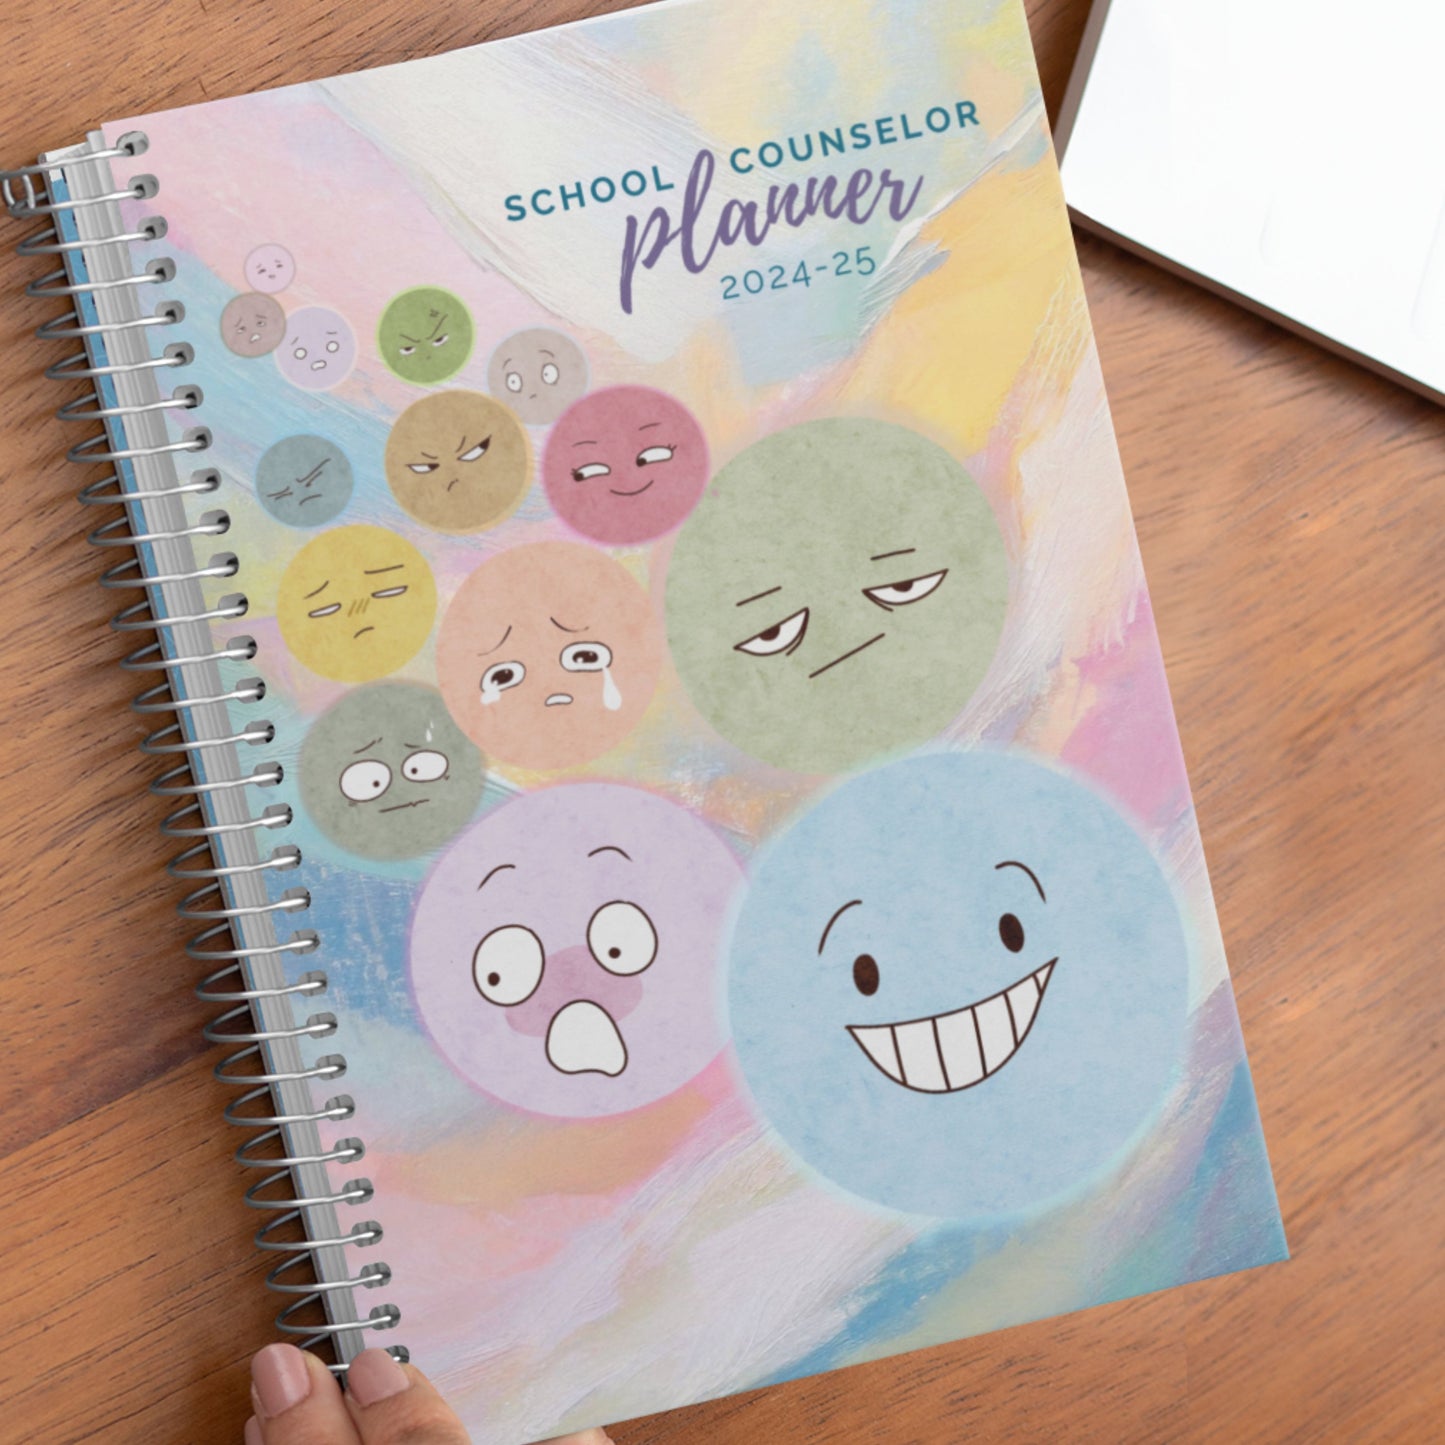 Printed Emoji School Counselor Planner 2024-2025